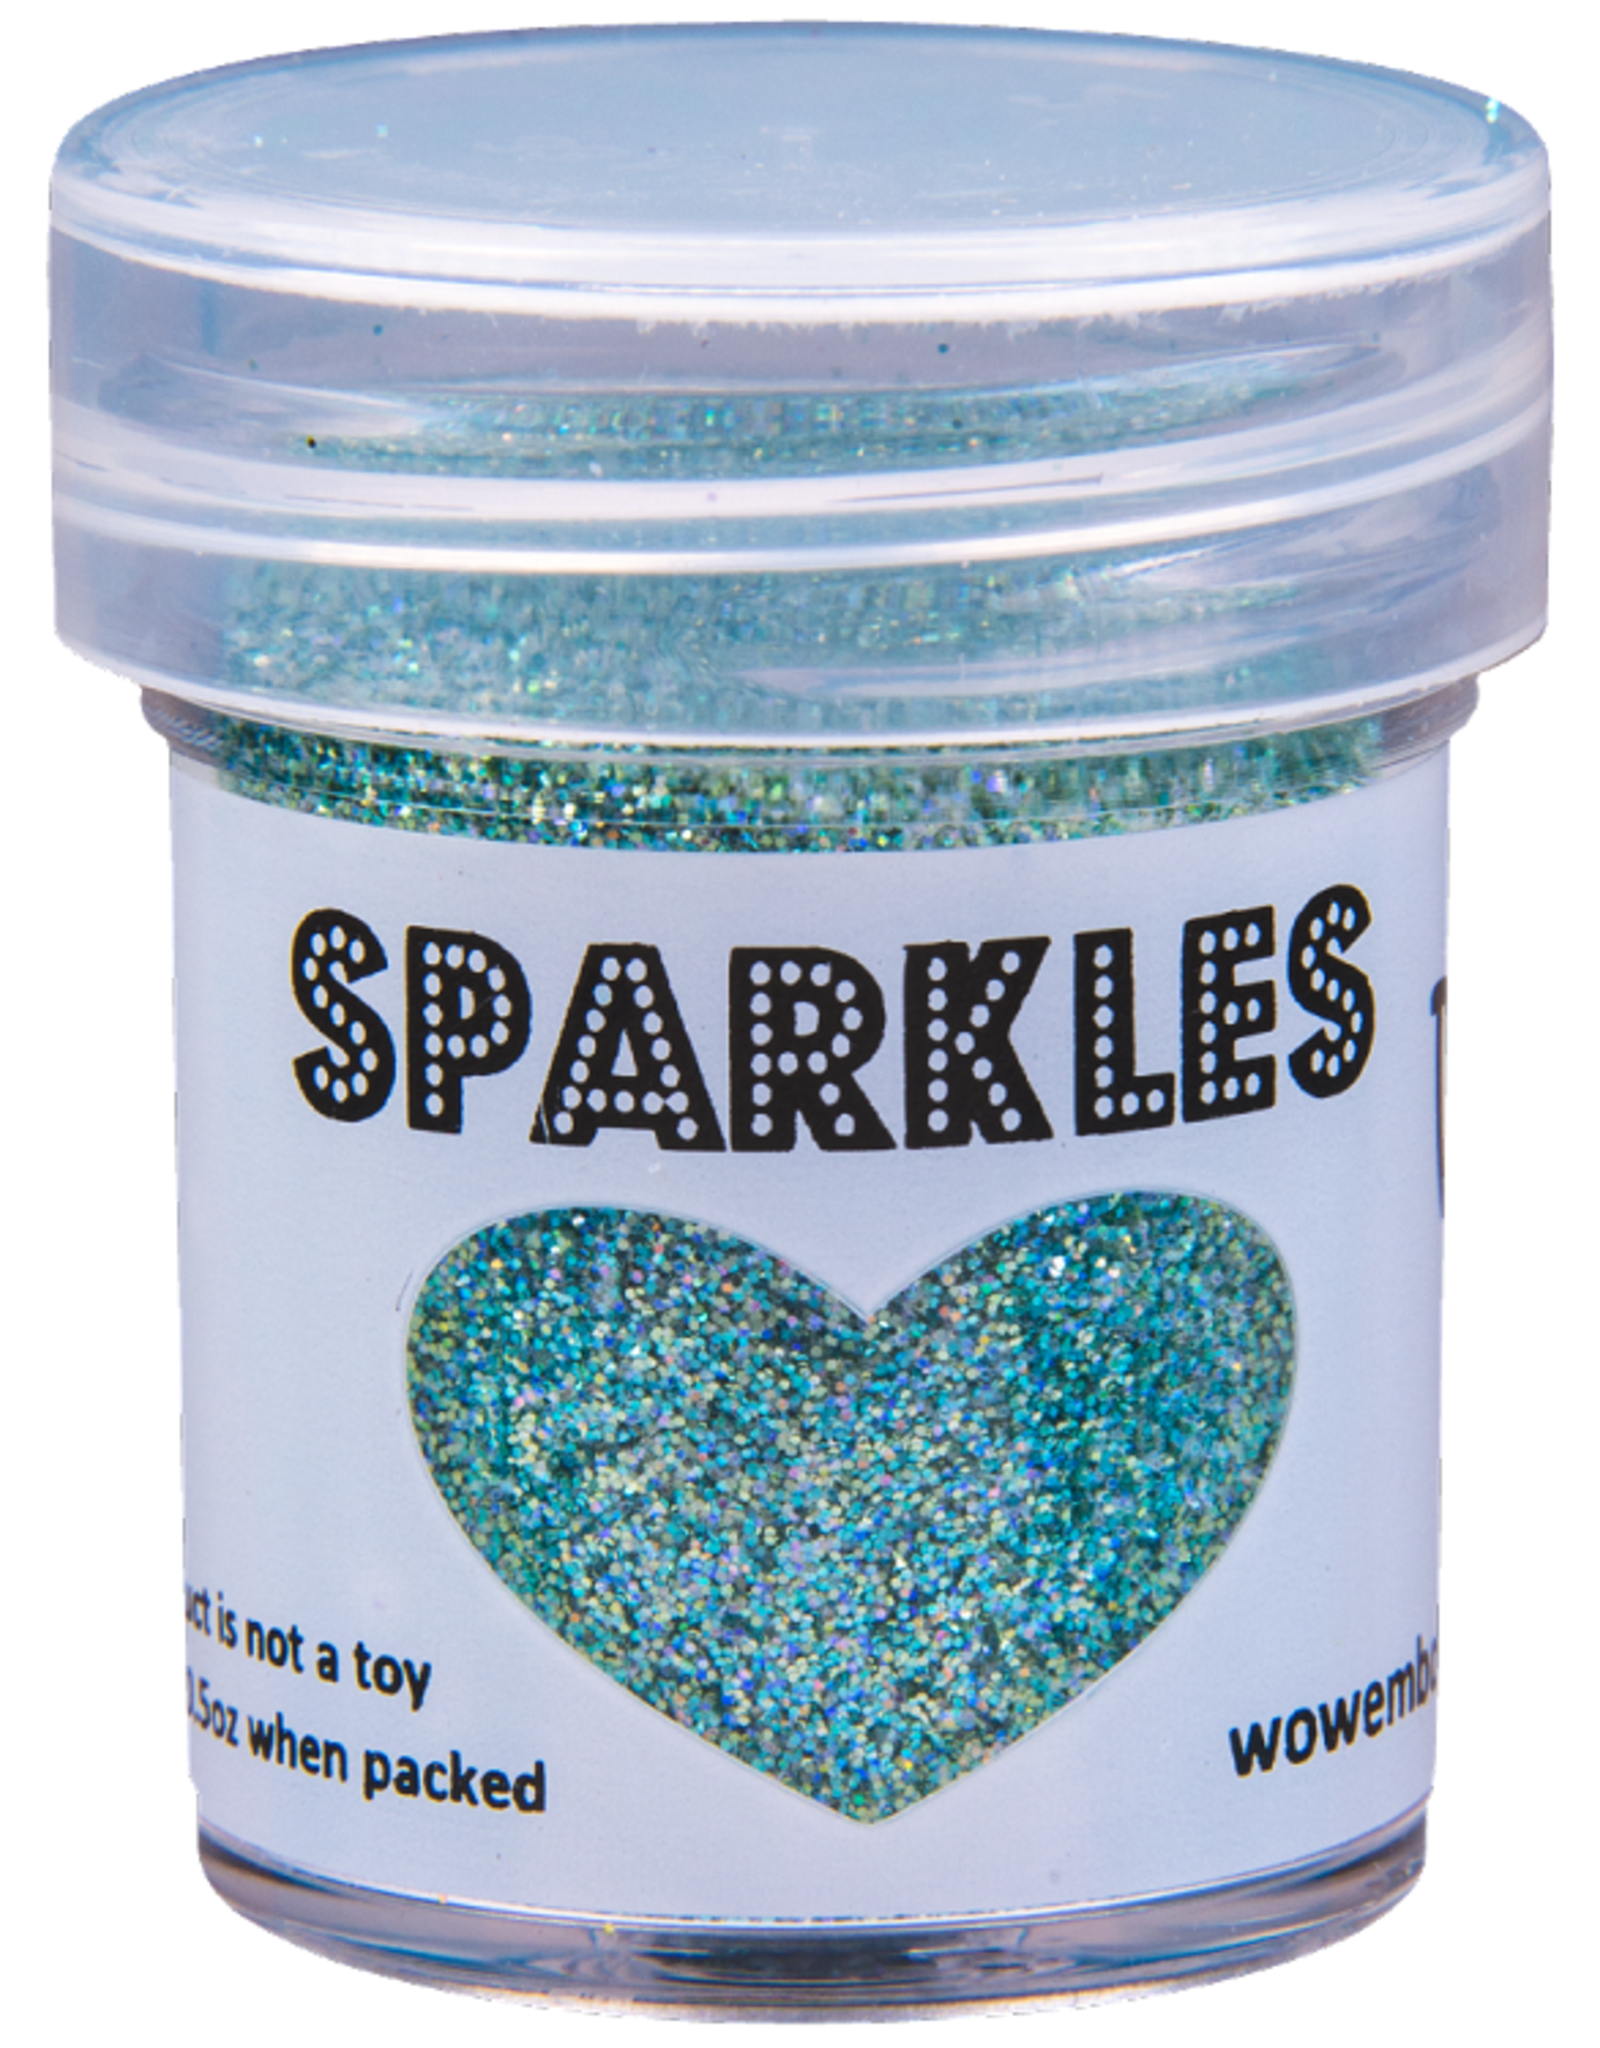 WOW! WOW Sparkles Glitter -  Seahorse